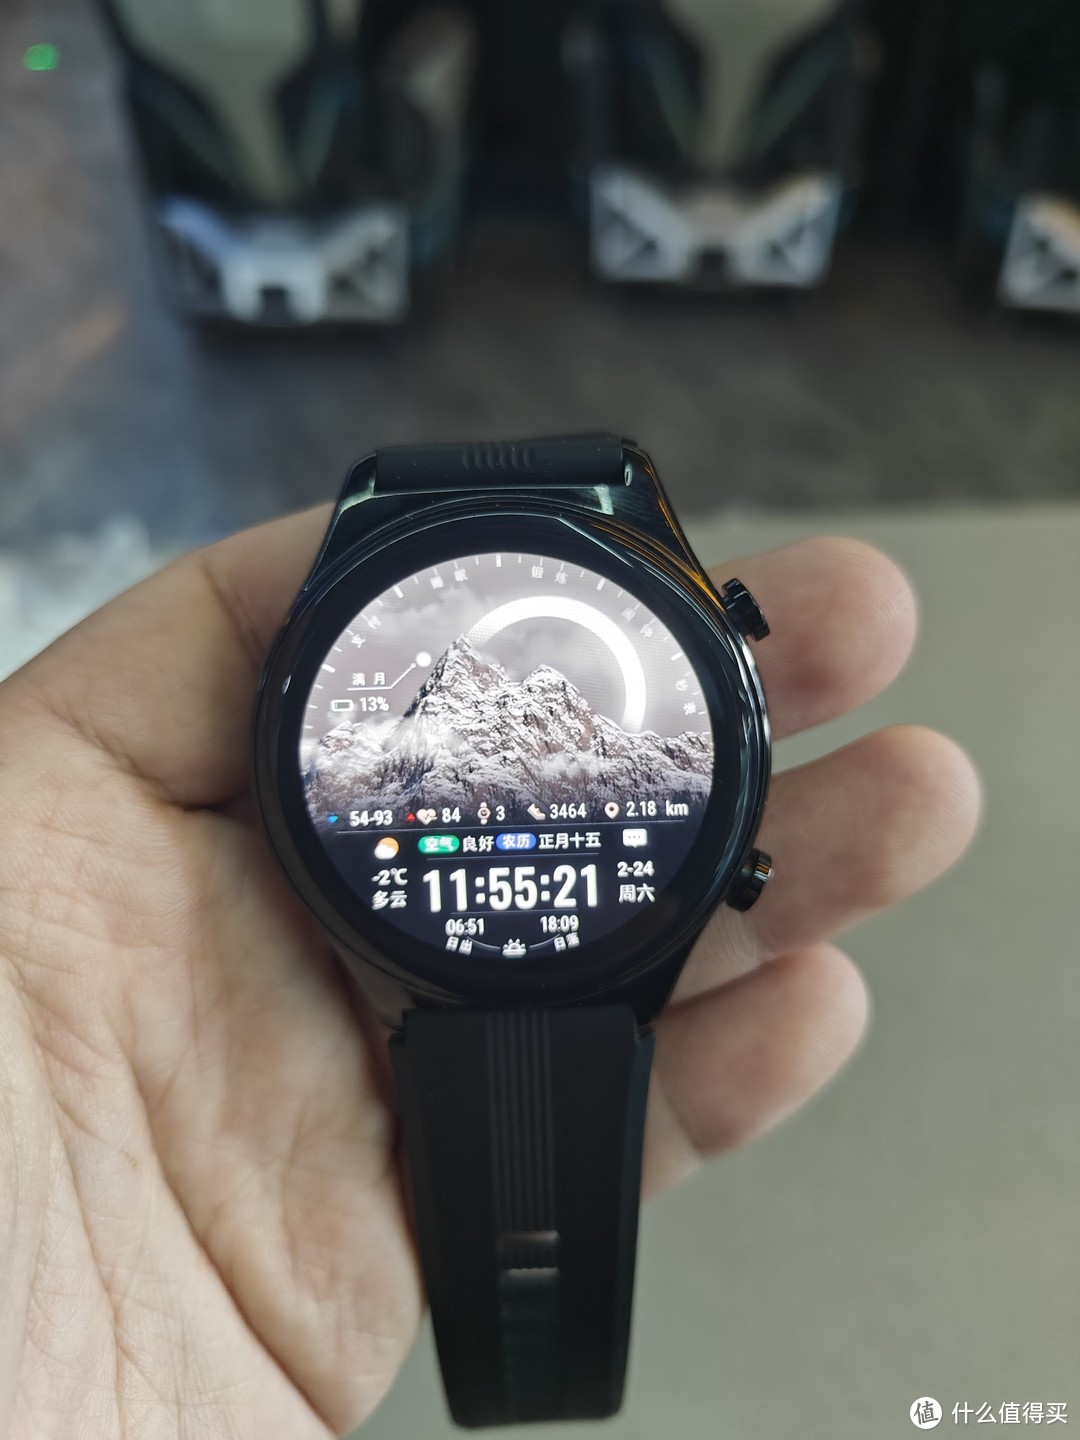 官方卖一千多的荣耀智能手表，夺宝岛350就入了？？？